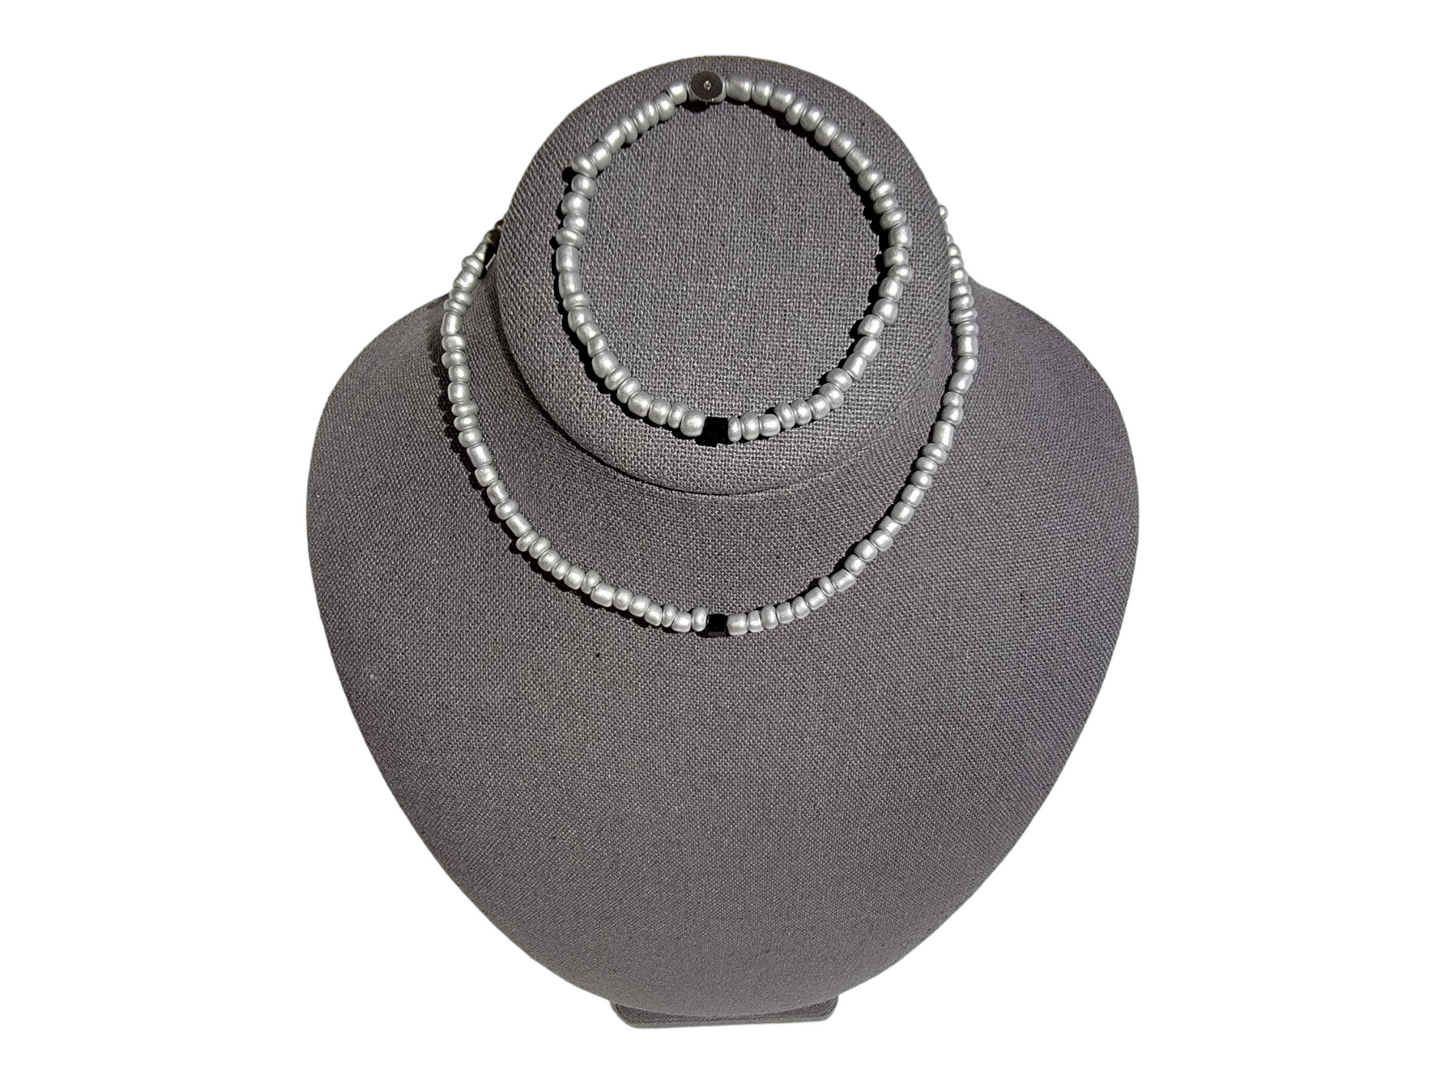 Gen Z Necklace and Bracelet Sets